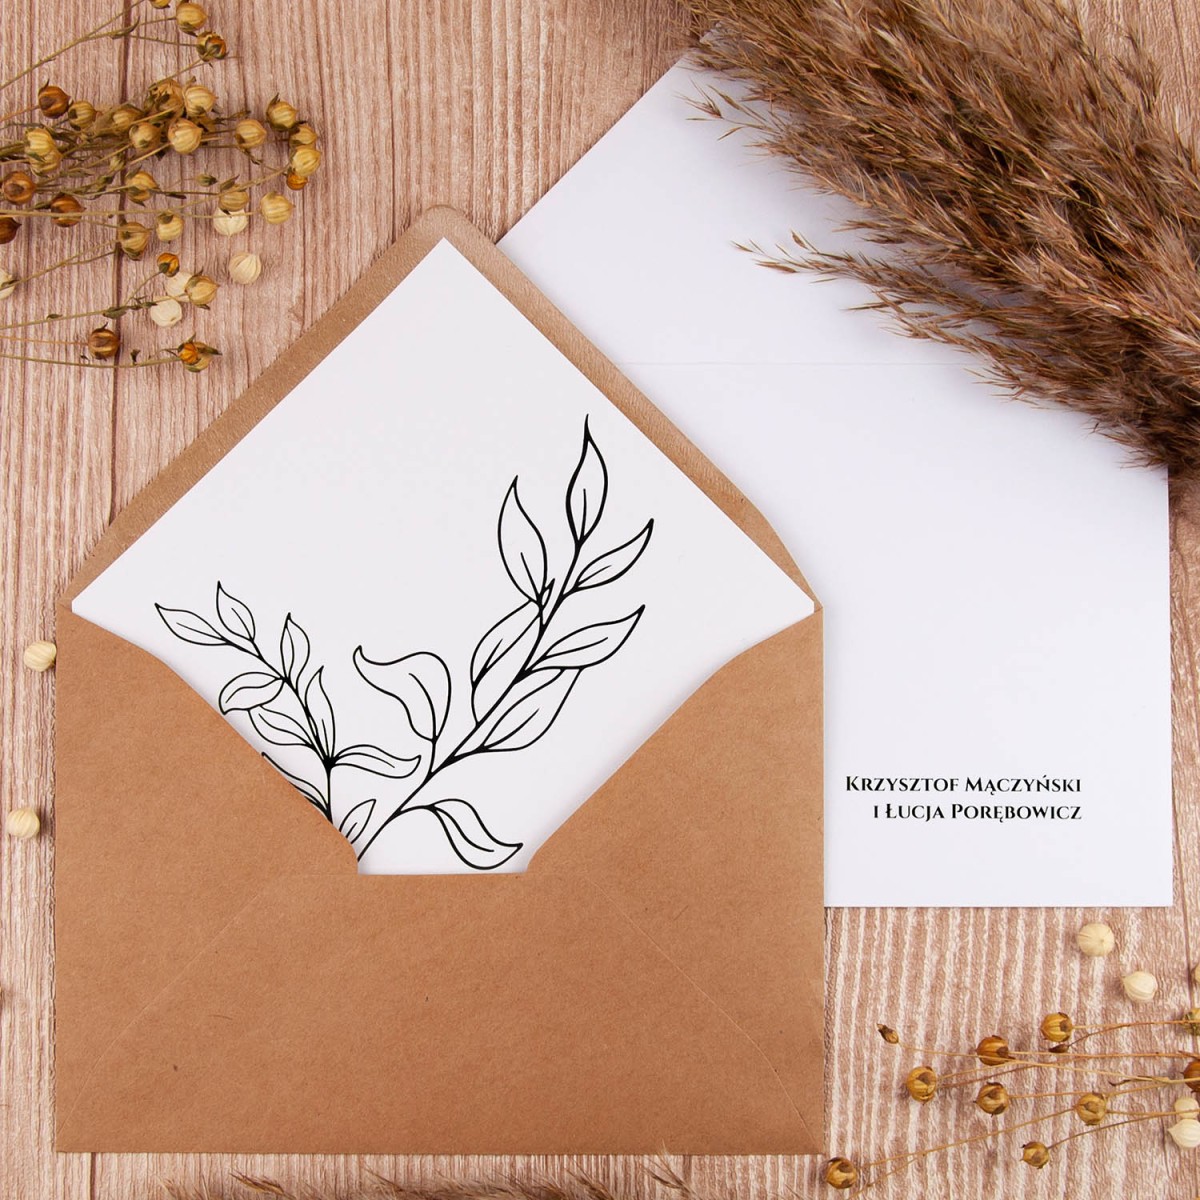 Rustykalne zaproszenia ślubne z papierem ekologicznym i minimalistycznymi liśćmi - Wild Eco